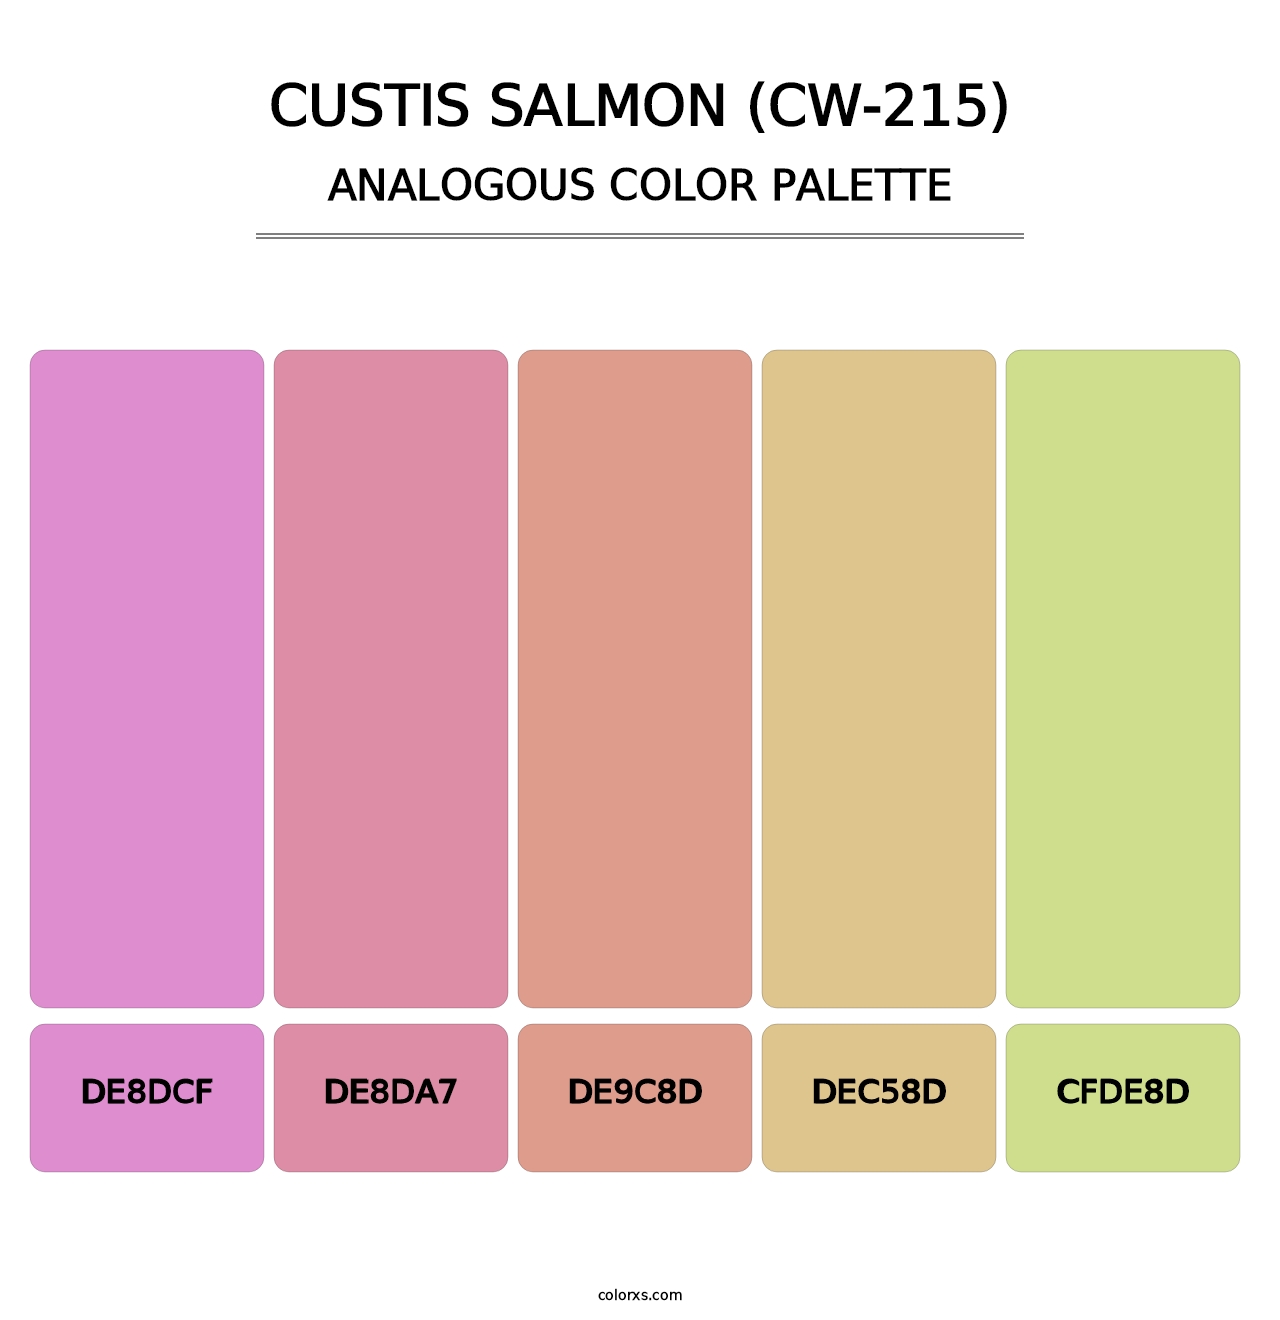 Custis Salmon (CW-215) - Analogous Color Palette